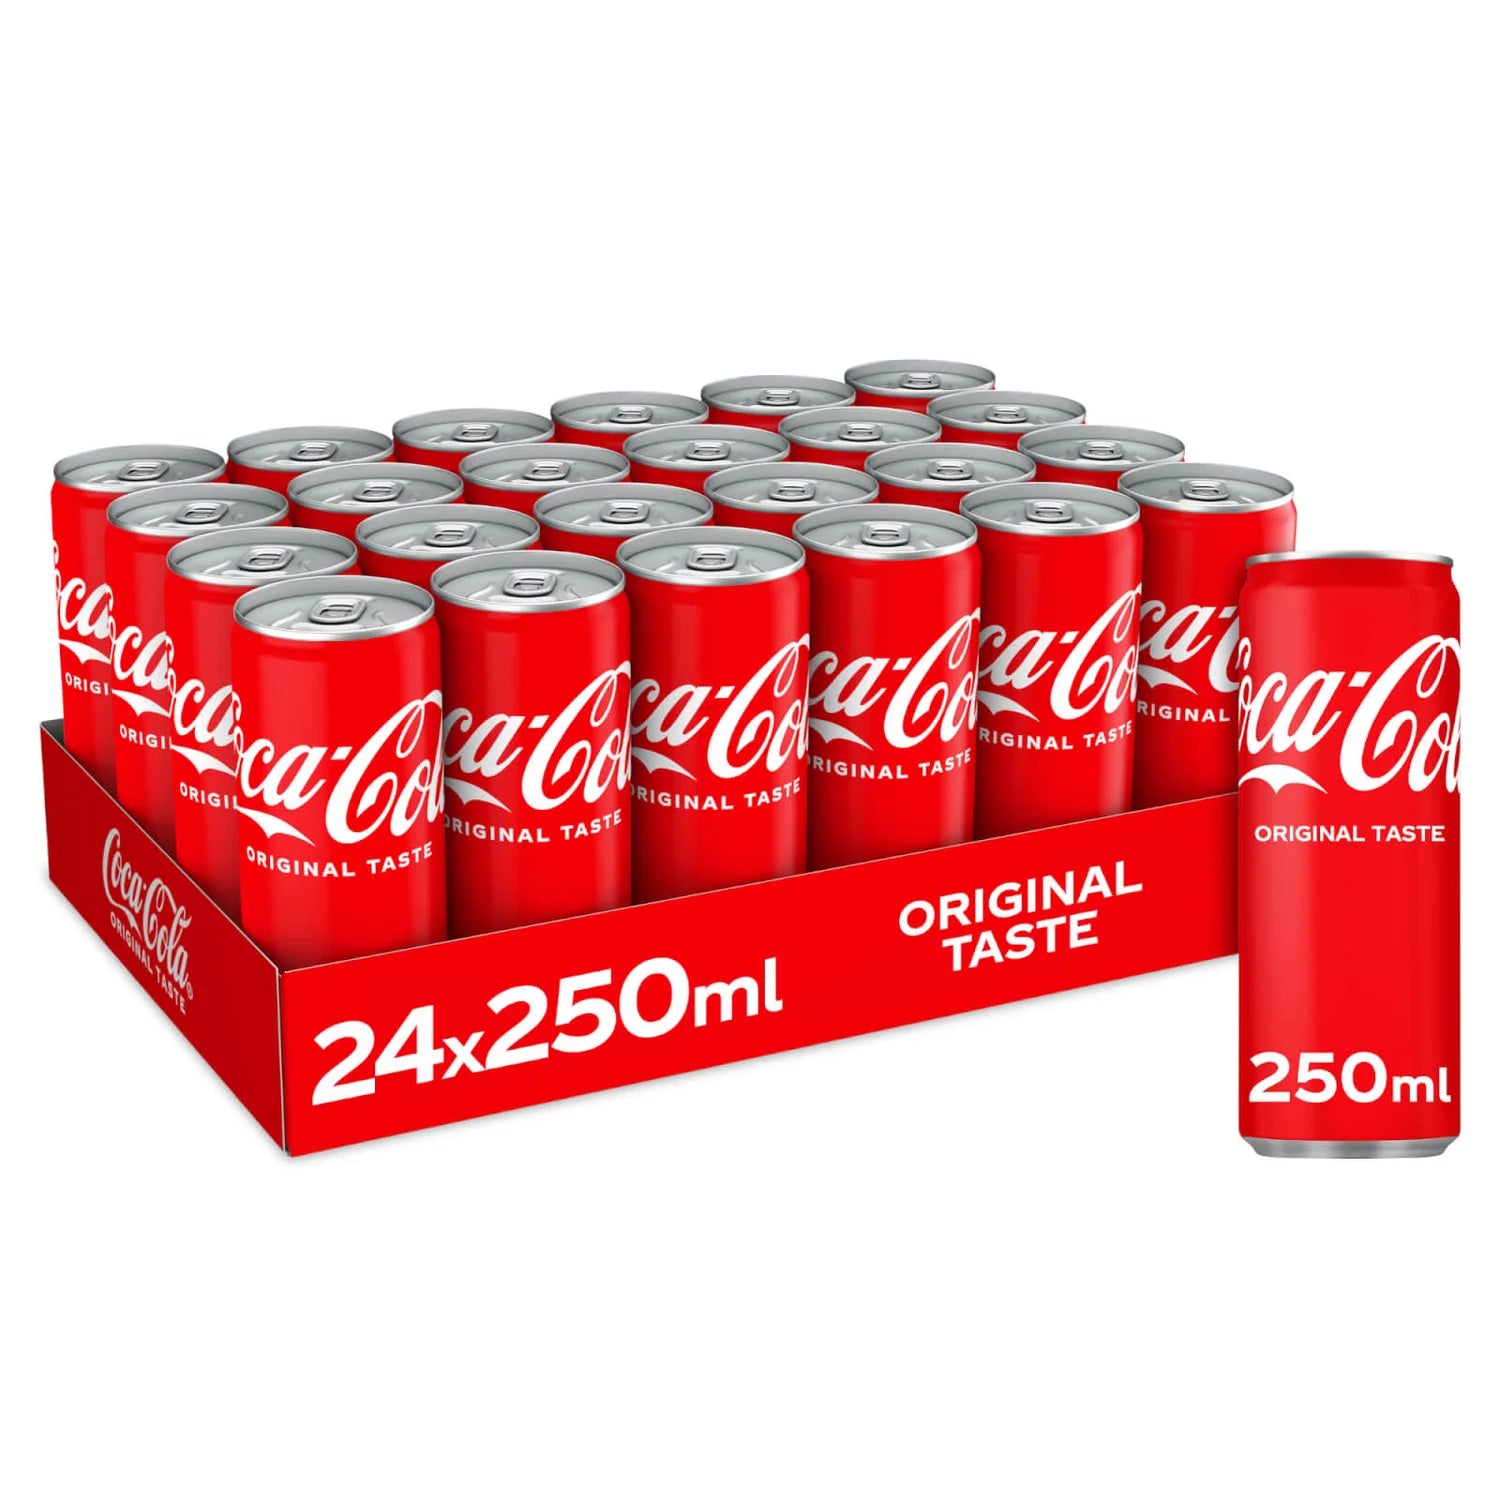 Coca-Cola Original Taste - 250ml - Case of 24